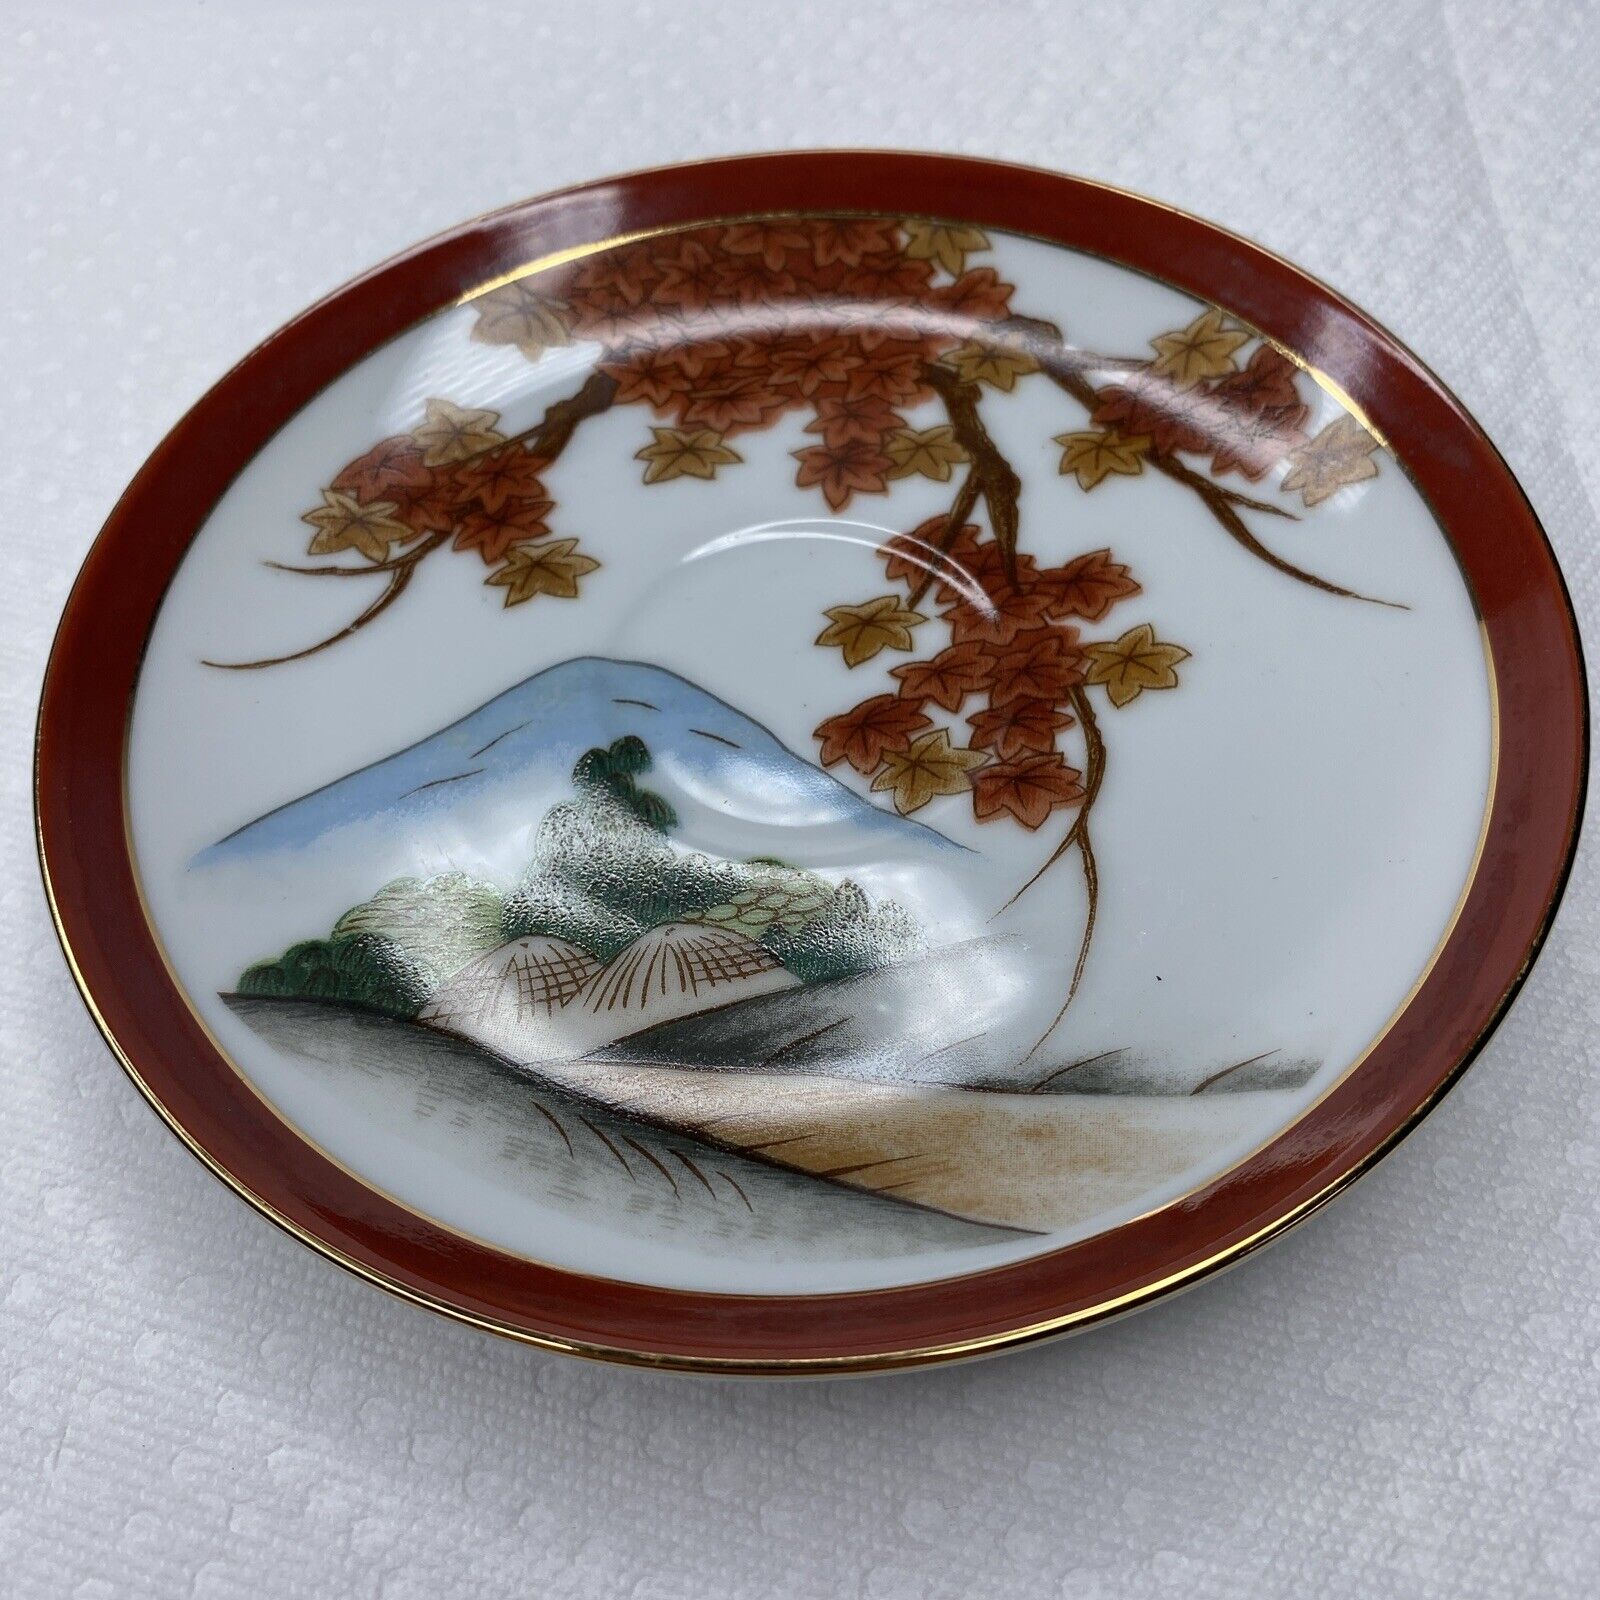 Vintage Japanese Arita ART15 Saucer Plate  Rust Gold Leaves 5.75”